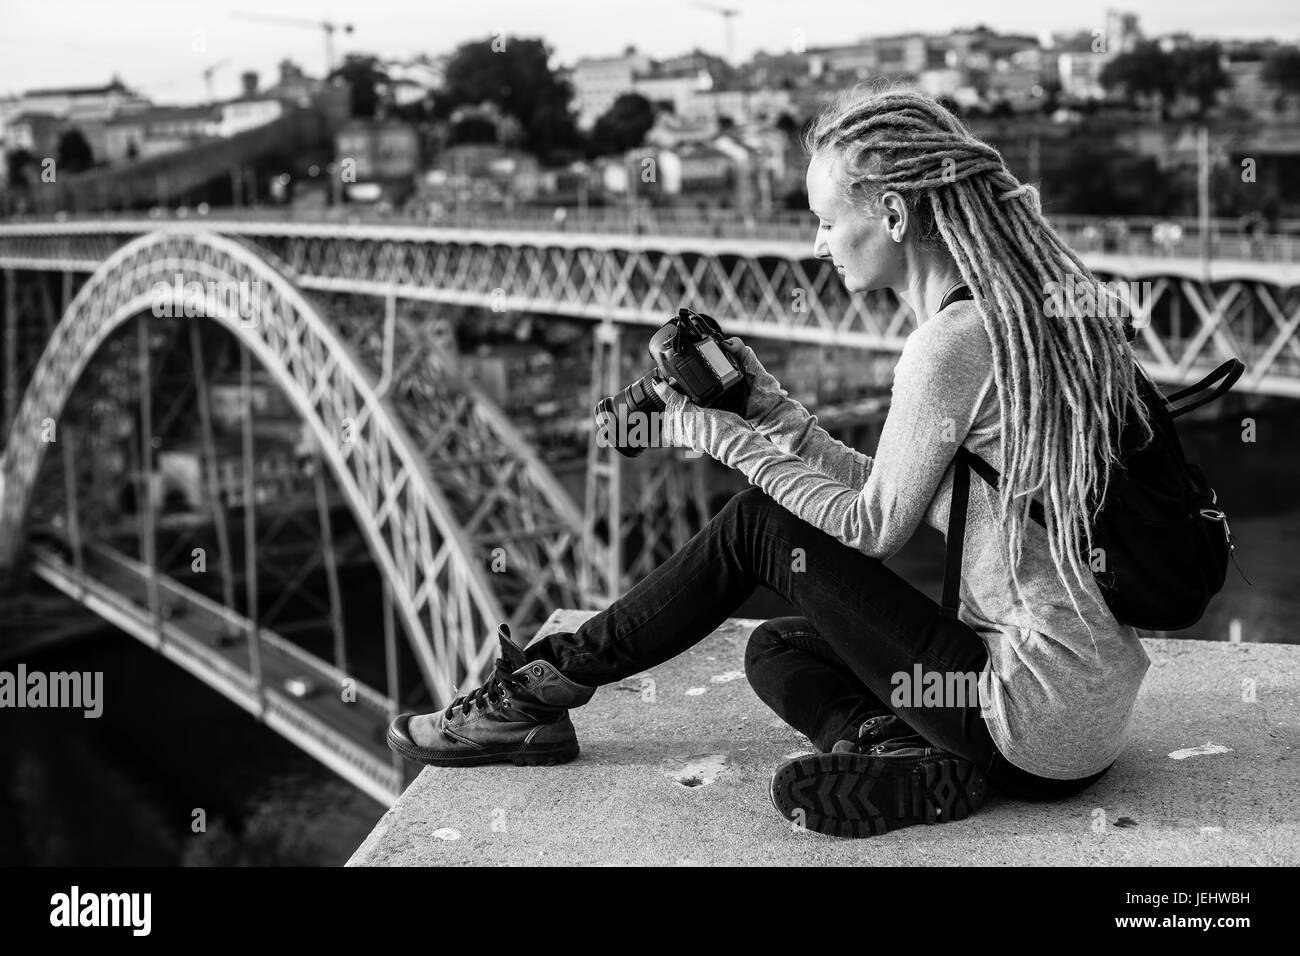 Junge Frau mit Dreadlocks, Bilder von vor der Kamera, Altstadt, Porto, Portugal. Schwarz-weiß-Foto. Stockfoto